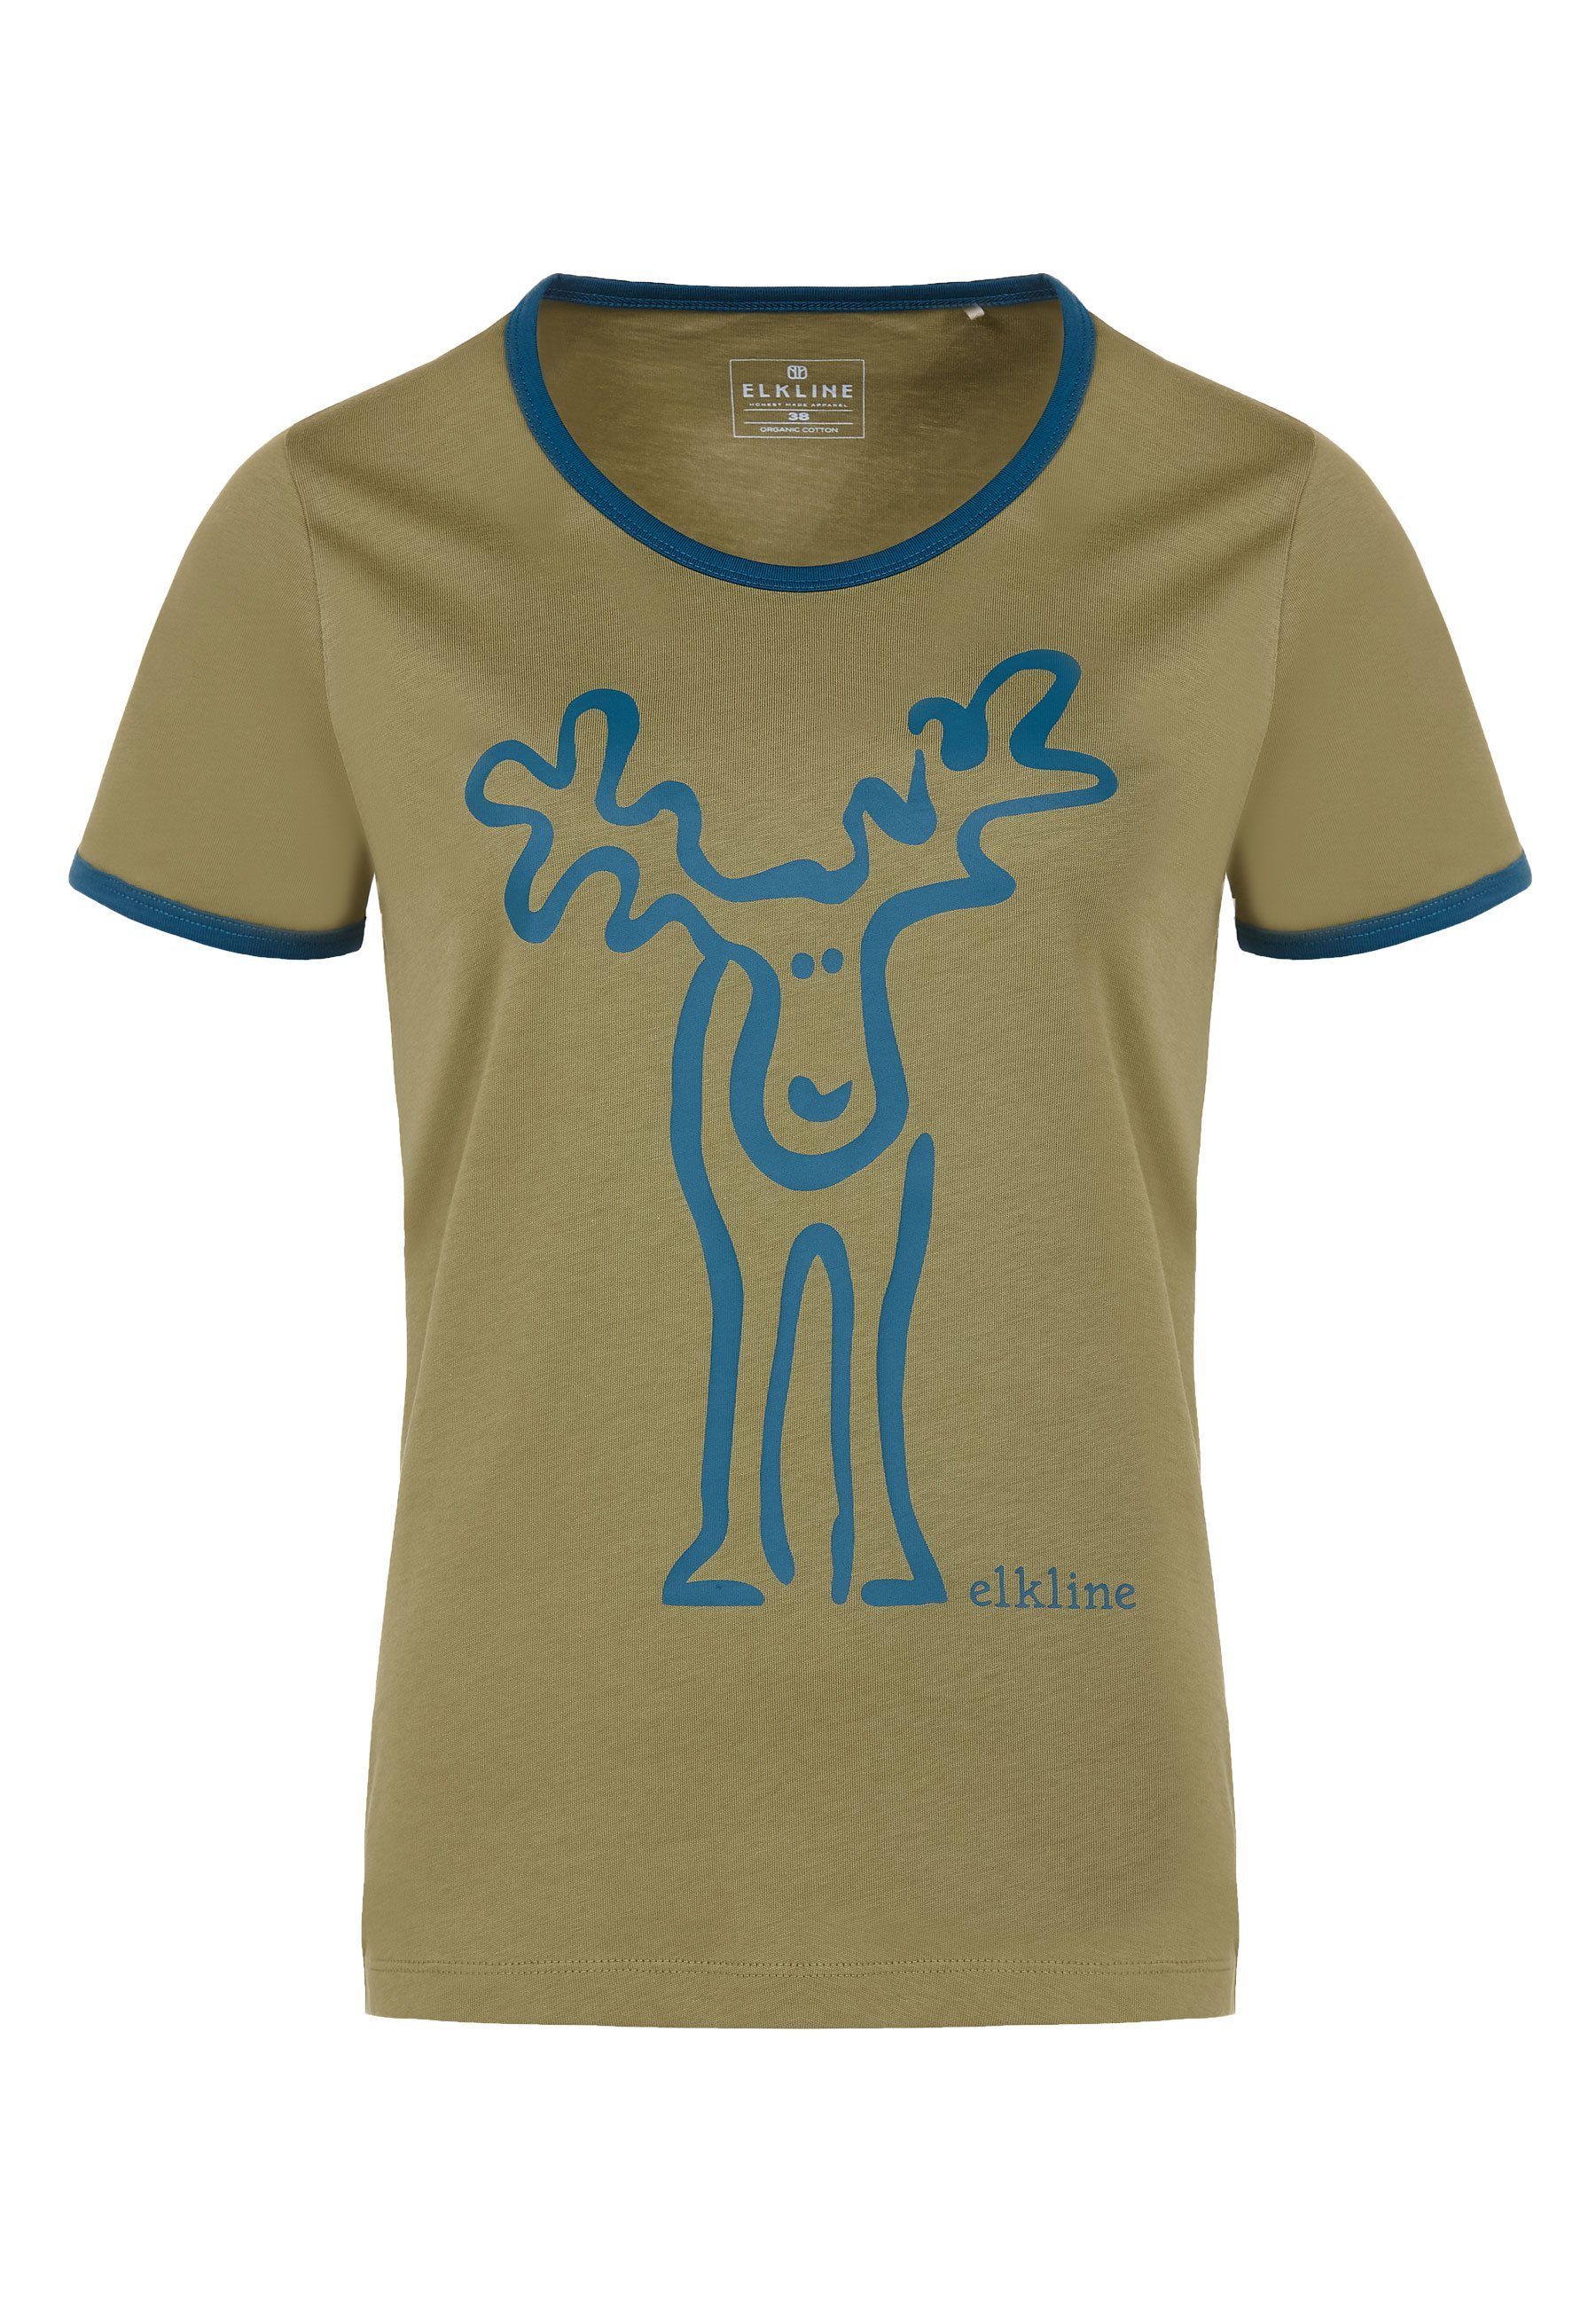 Elkline T-Shirt Rudolfine Retro Elch - Print avocado Rücken Brust und blue coral